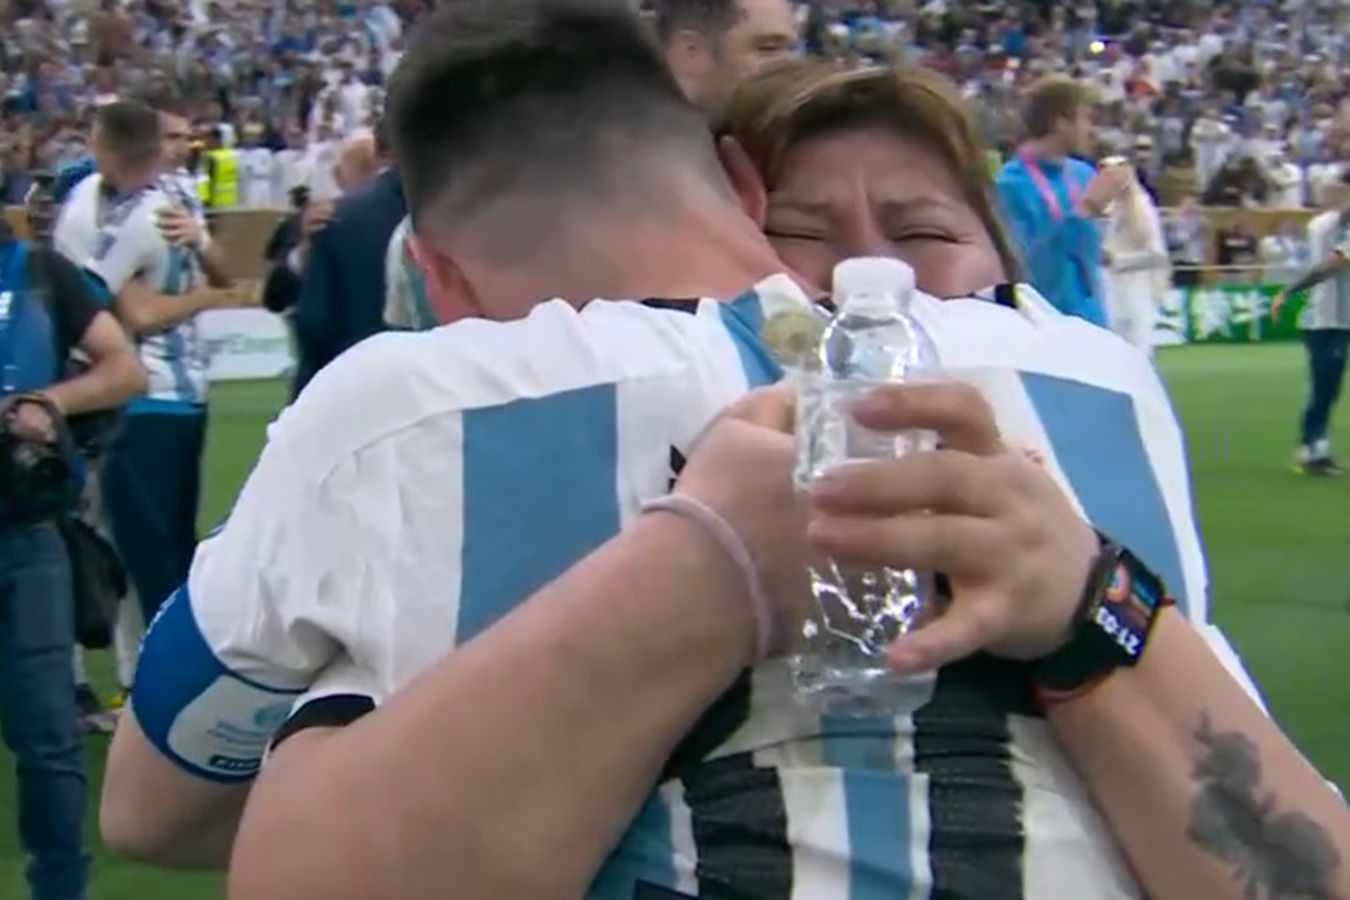 ЧМ-2022: капитан сборной Аргентины Лионель Месси обнял женщину на поле, кто она такая